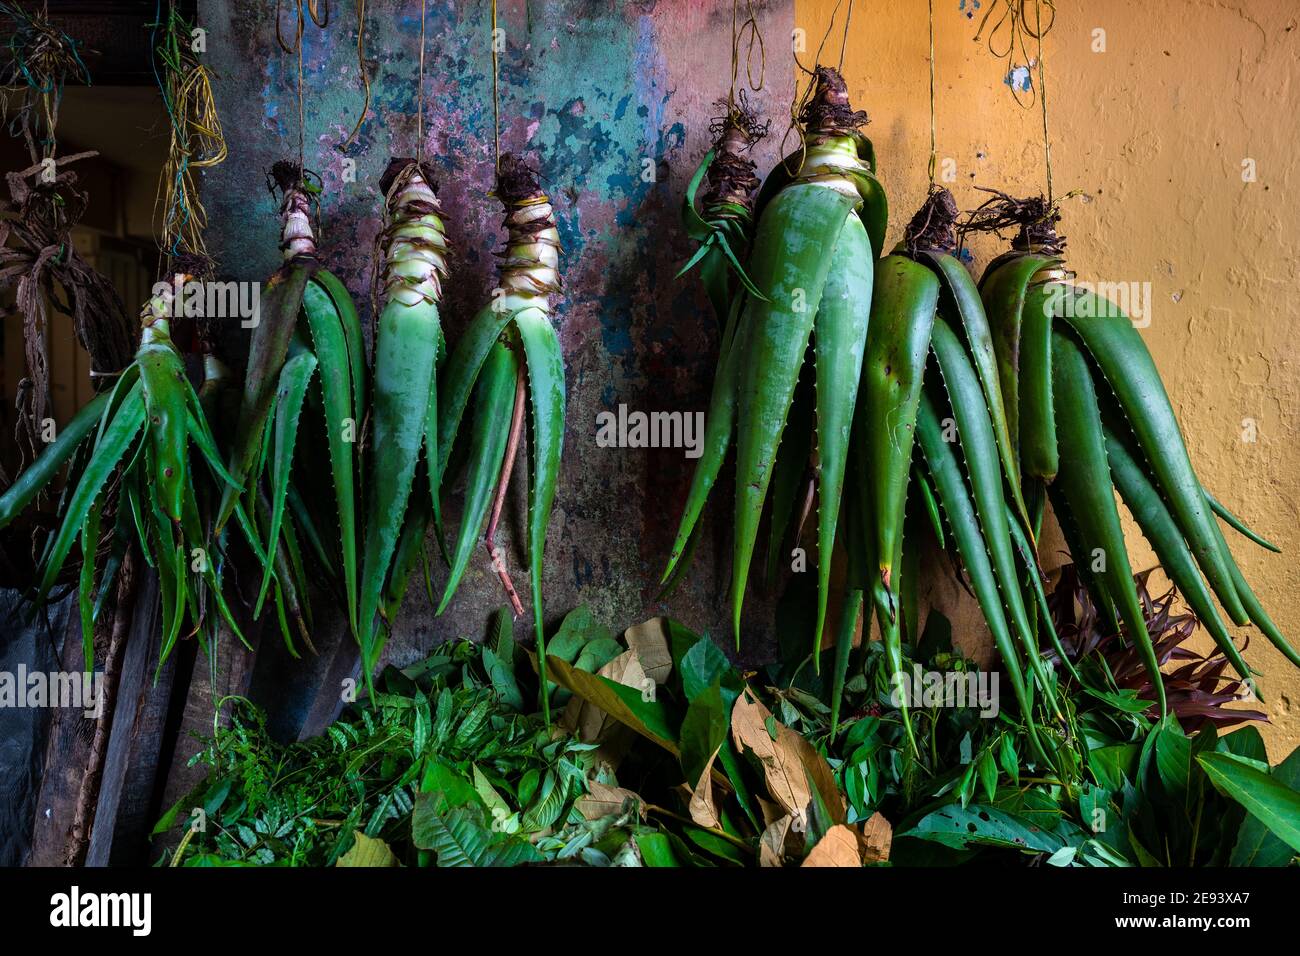 Tutte le piante di Aloe vera sono viste appese in una bancarella in un mercato di strada lungo il fiume Atrato a Quibdó, Chocó, la regione pacifica della Colombia. Foto Stock